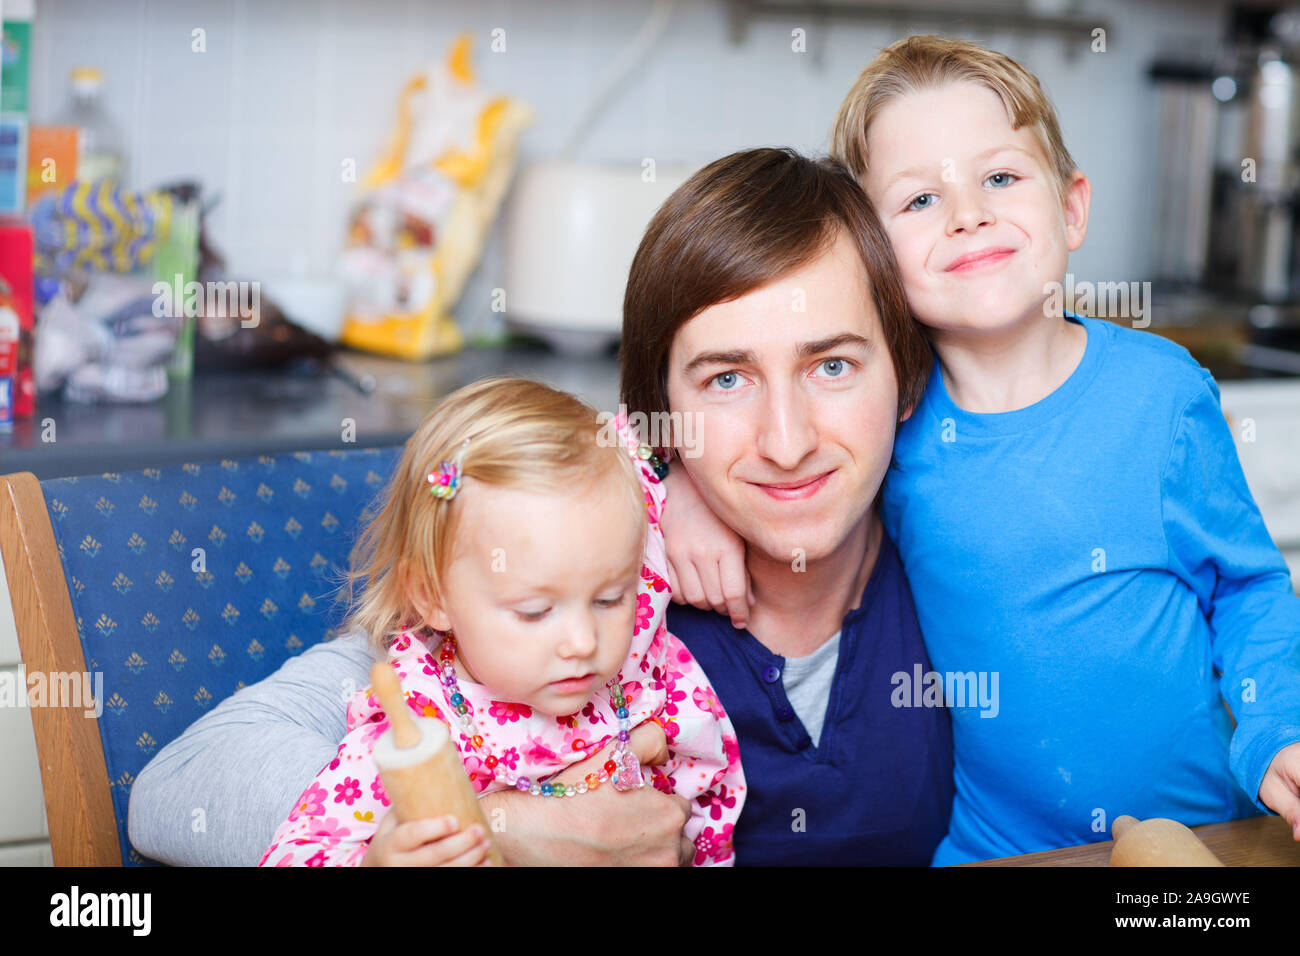 Finnland, Glueckliche Familie, Spielen und Backen, Mann und zwei Kinder Stock Photo